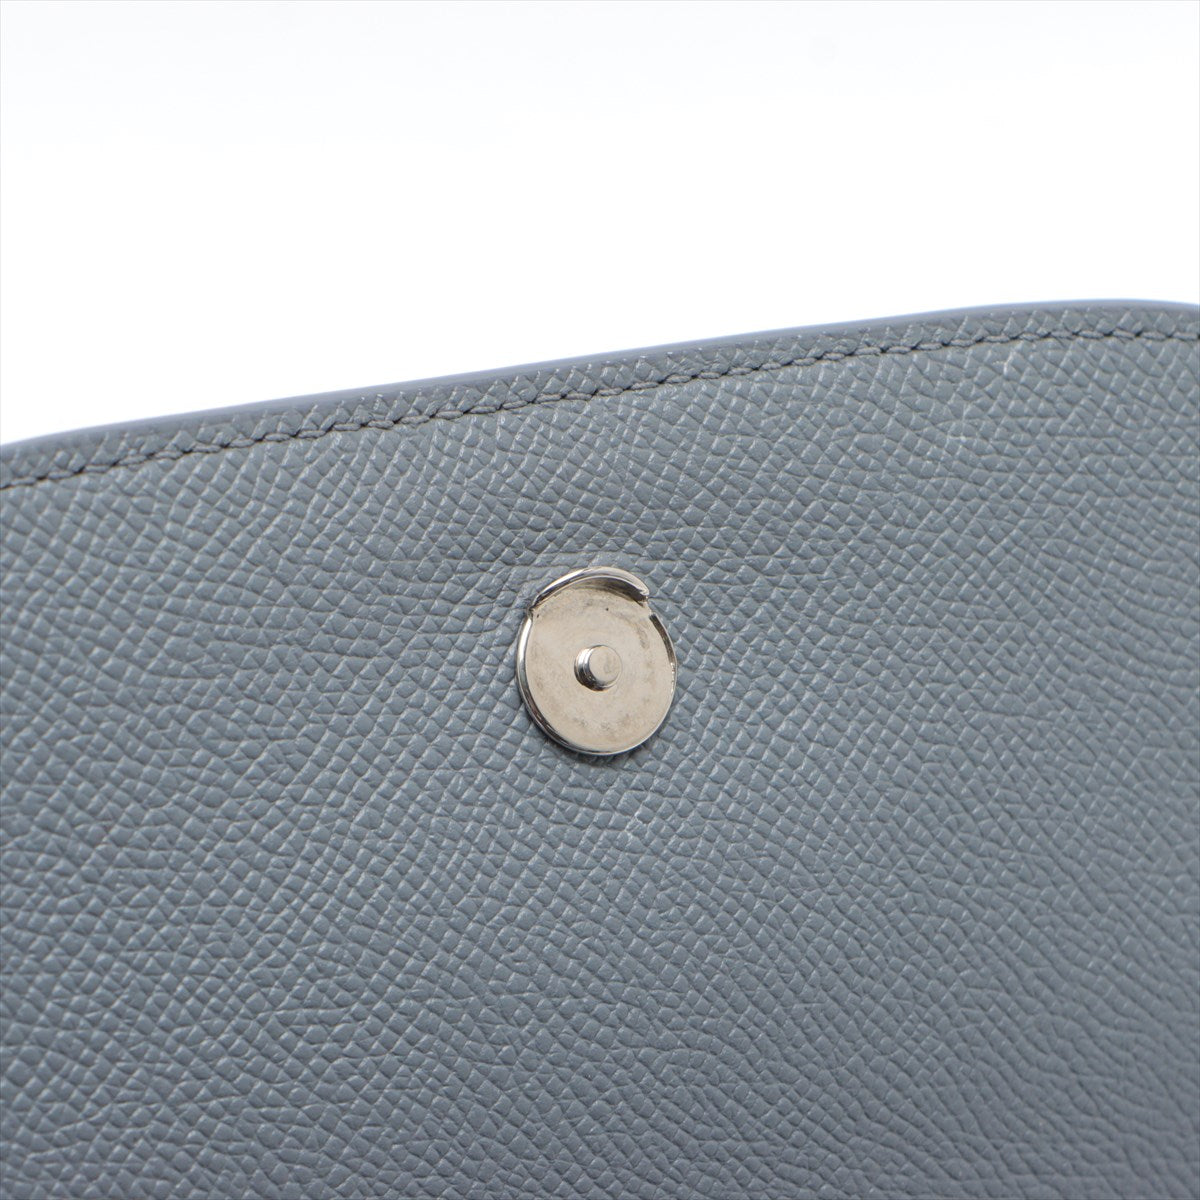 Balenciaga Ville Leather Shoulder Bag Gray